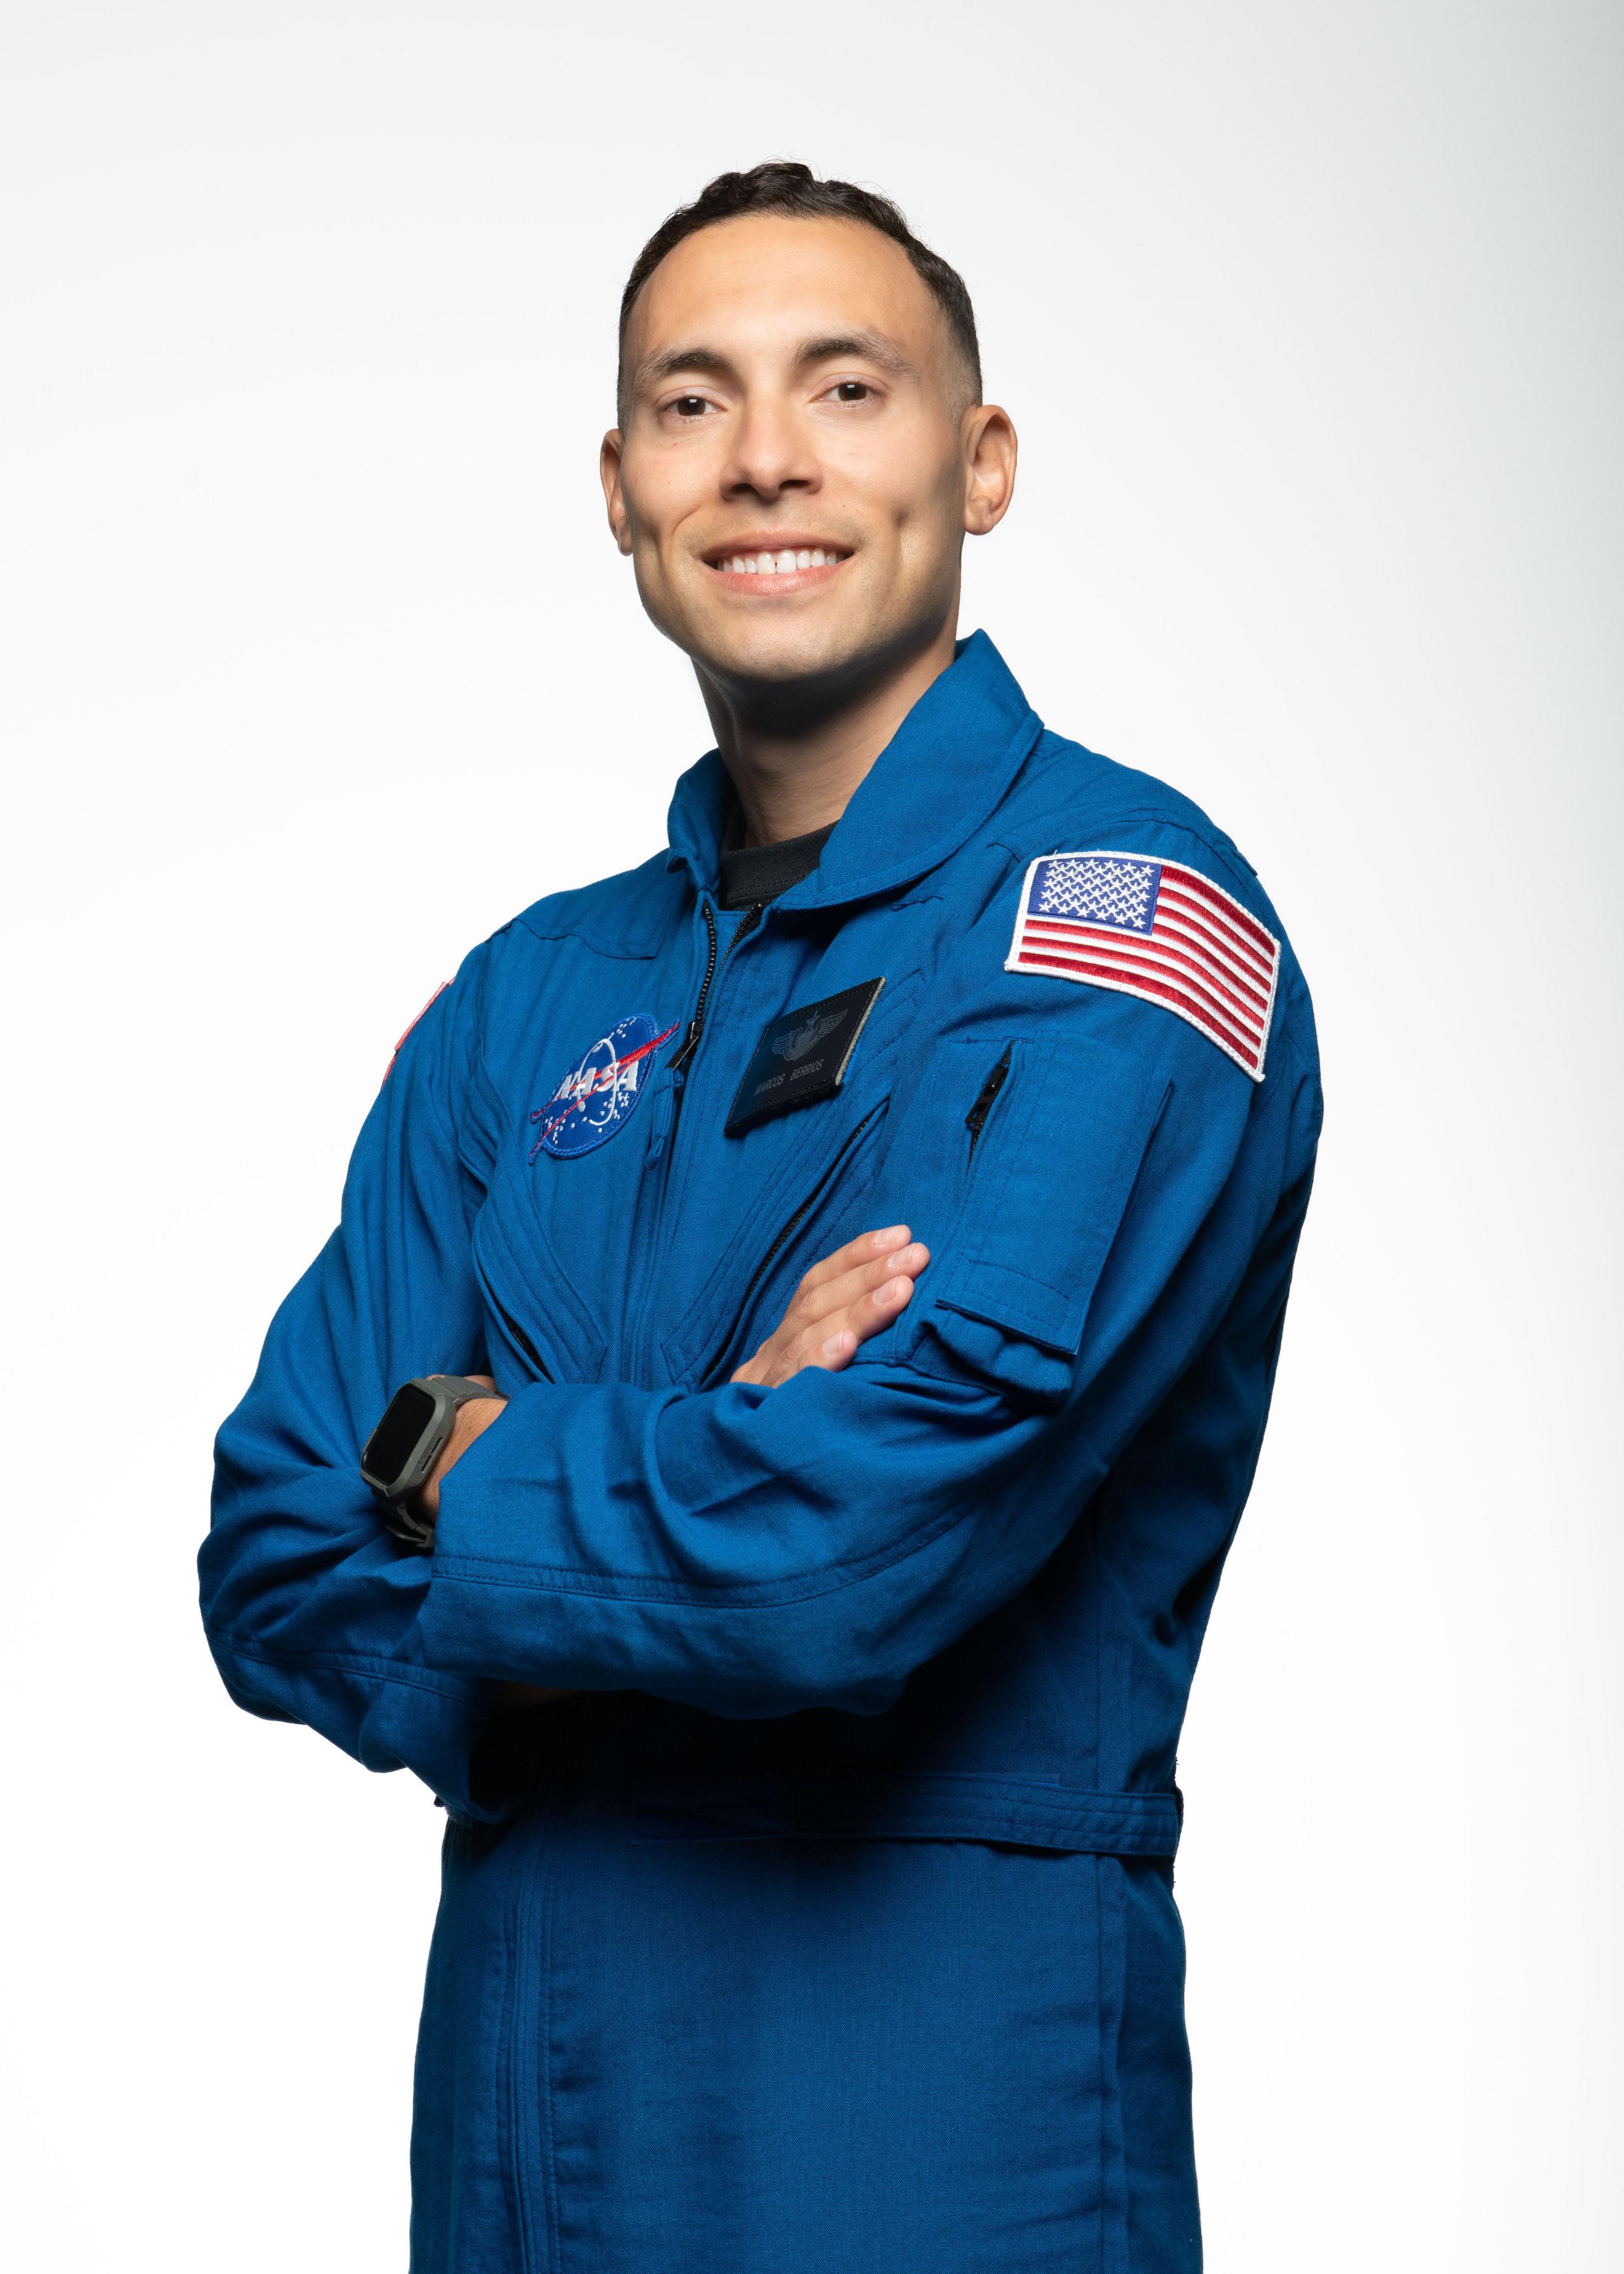 Marcos Berríos, candidato a astronauta boricua